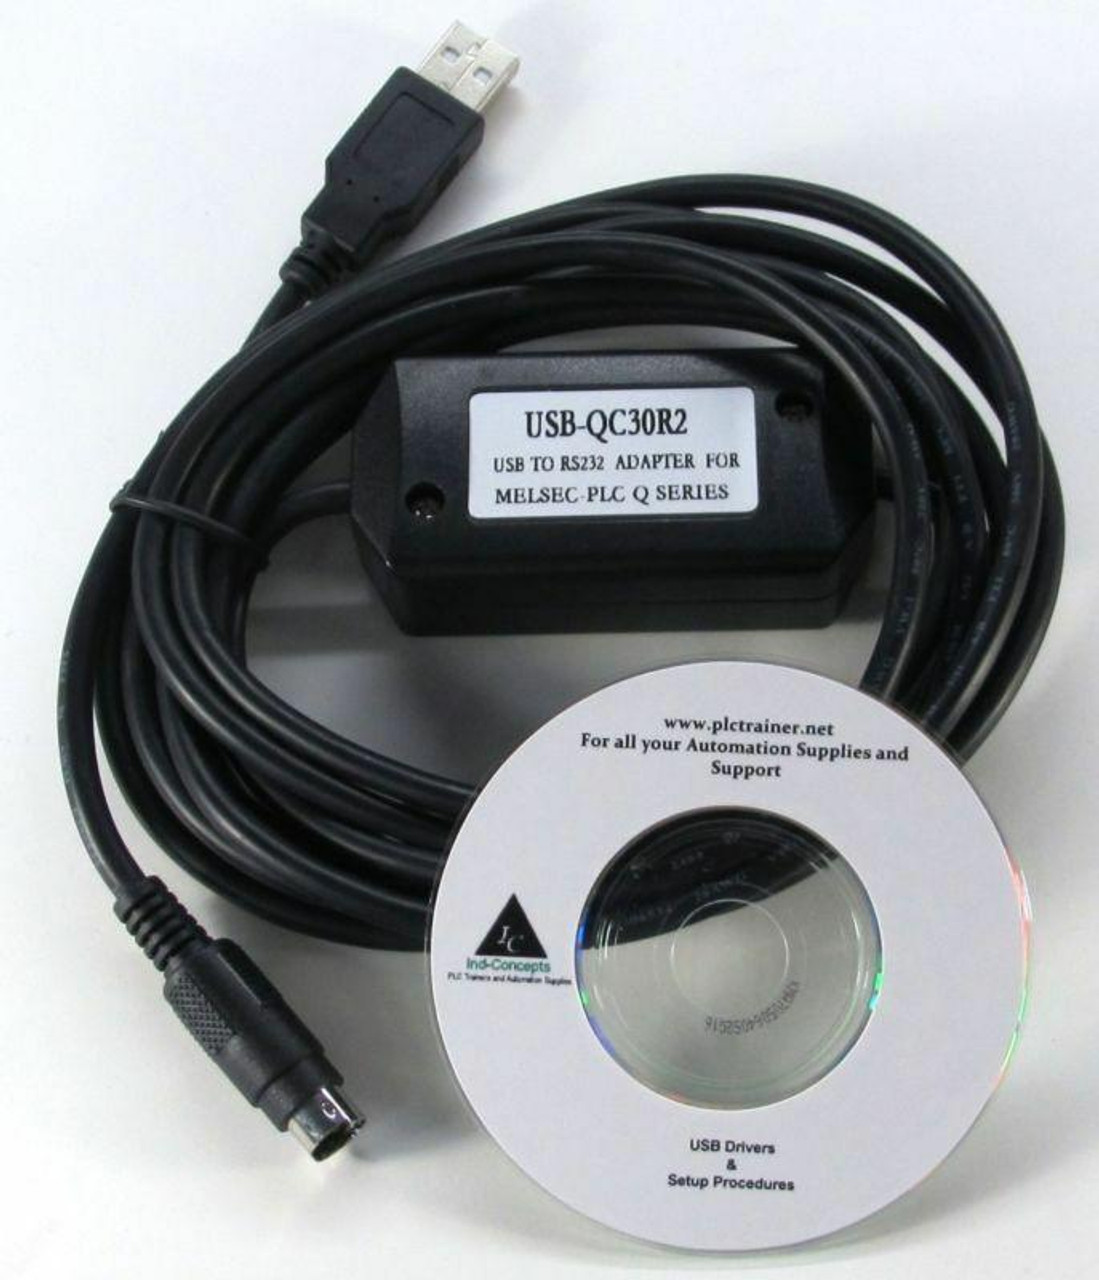 NEW USB-QC30R2 PLC Programming Cable For Mitsubishi Q Series USB USB-QC30R2 